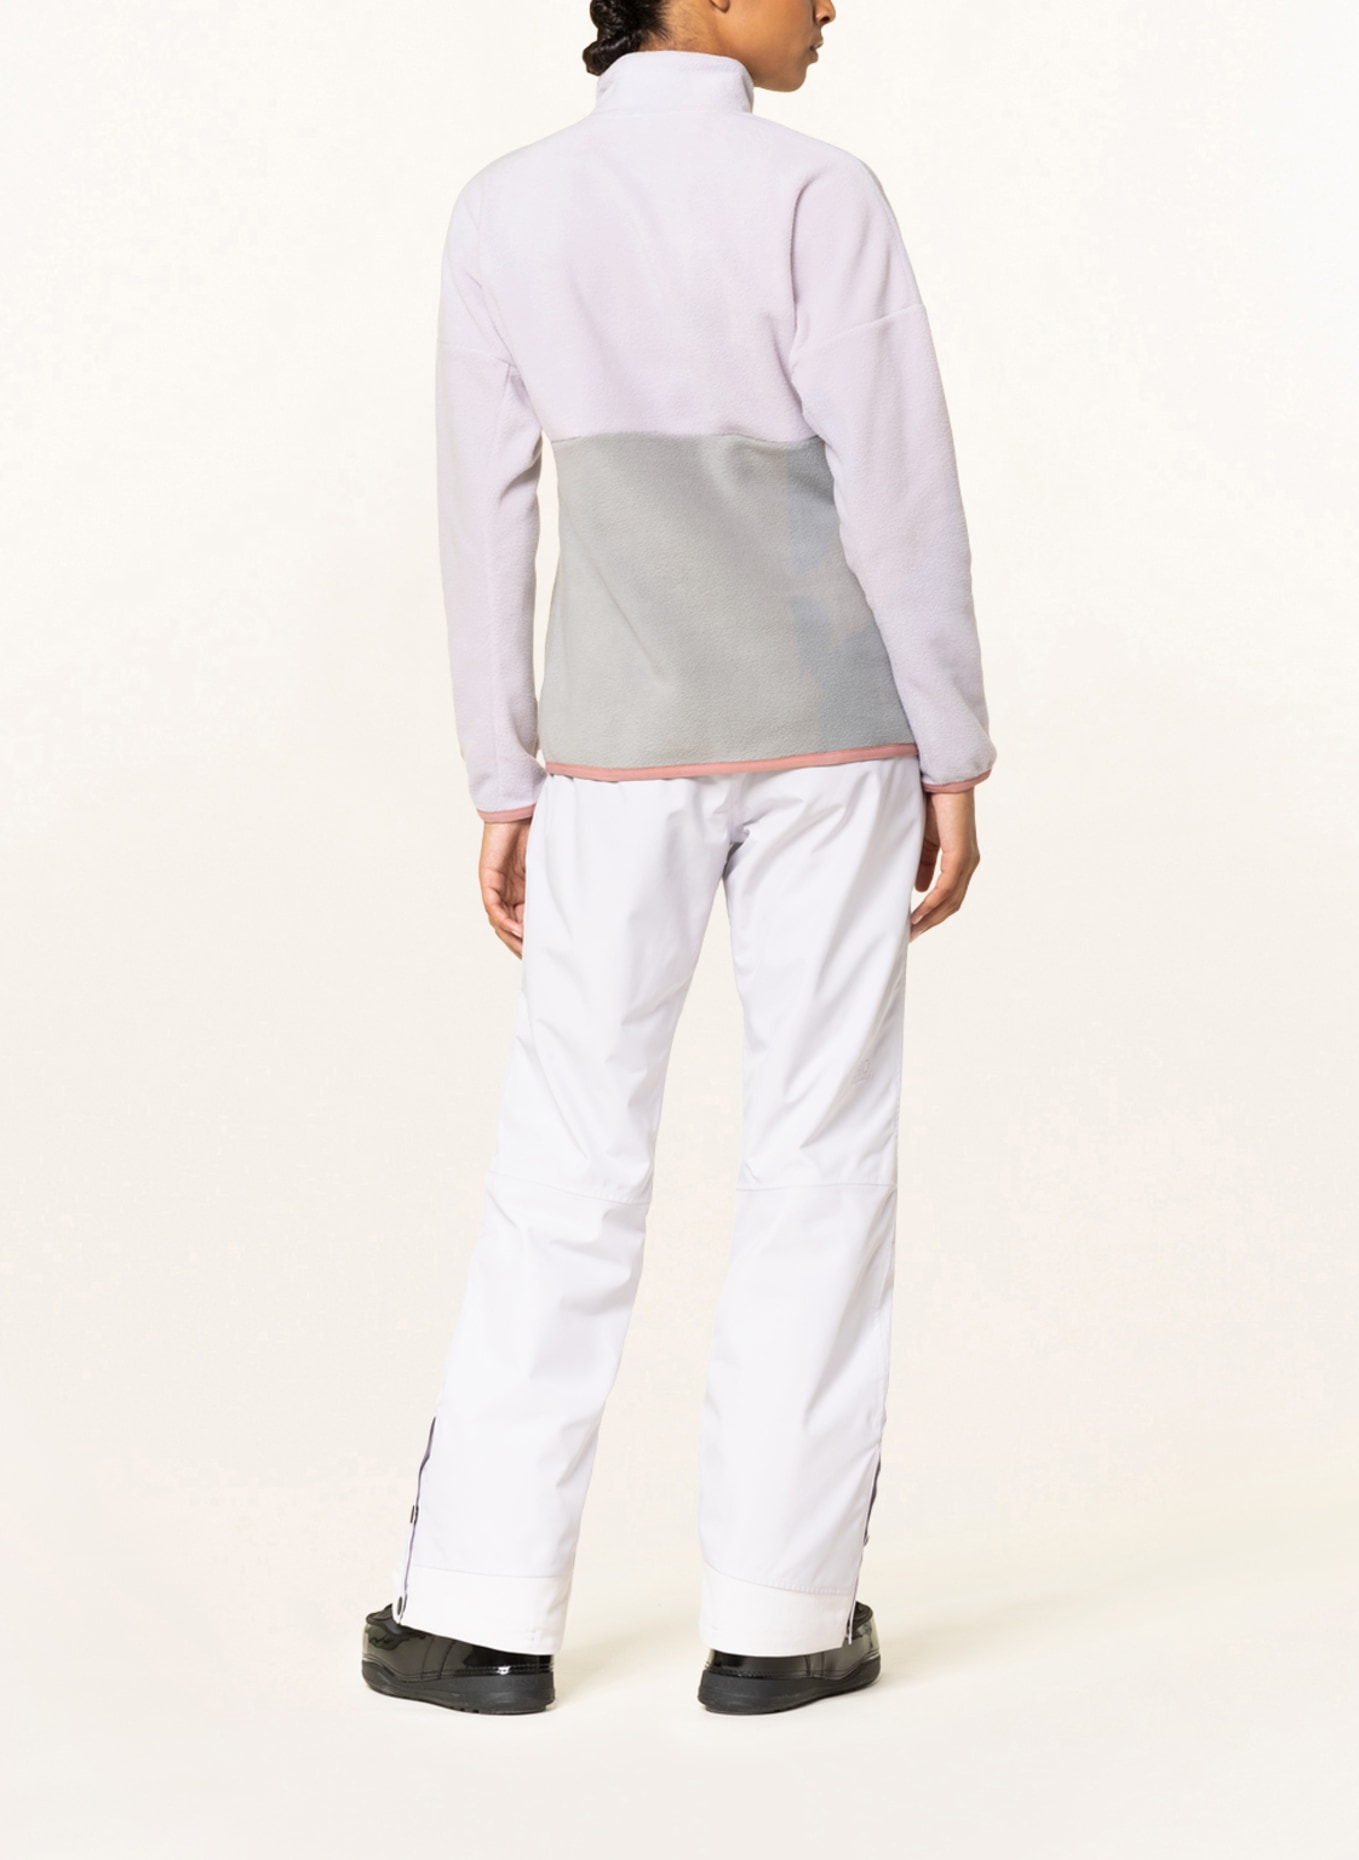 PICTURE Fleece sweater ARCCA, Color: LIGHT PURPLE/ LIGHT GRAY (Image 3)